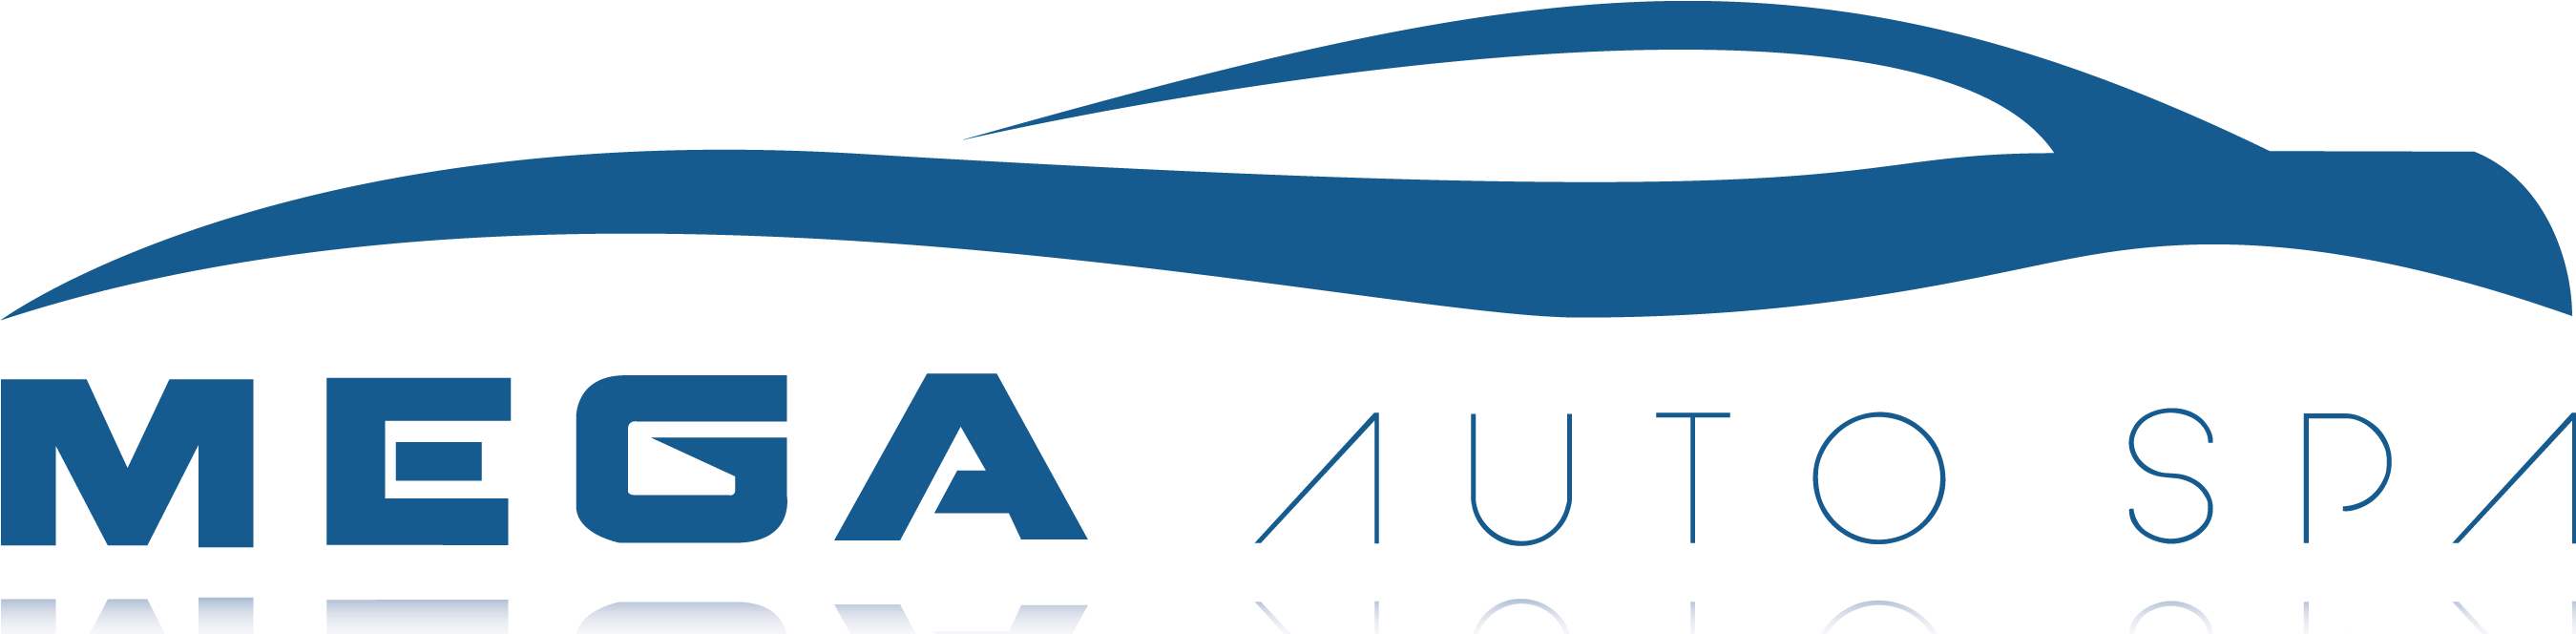 Mega Auto Spa - Mega Auto Spa Logo (2698x800)